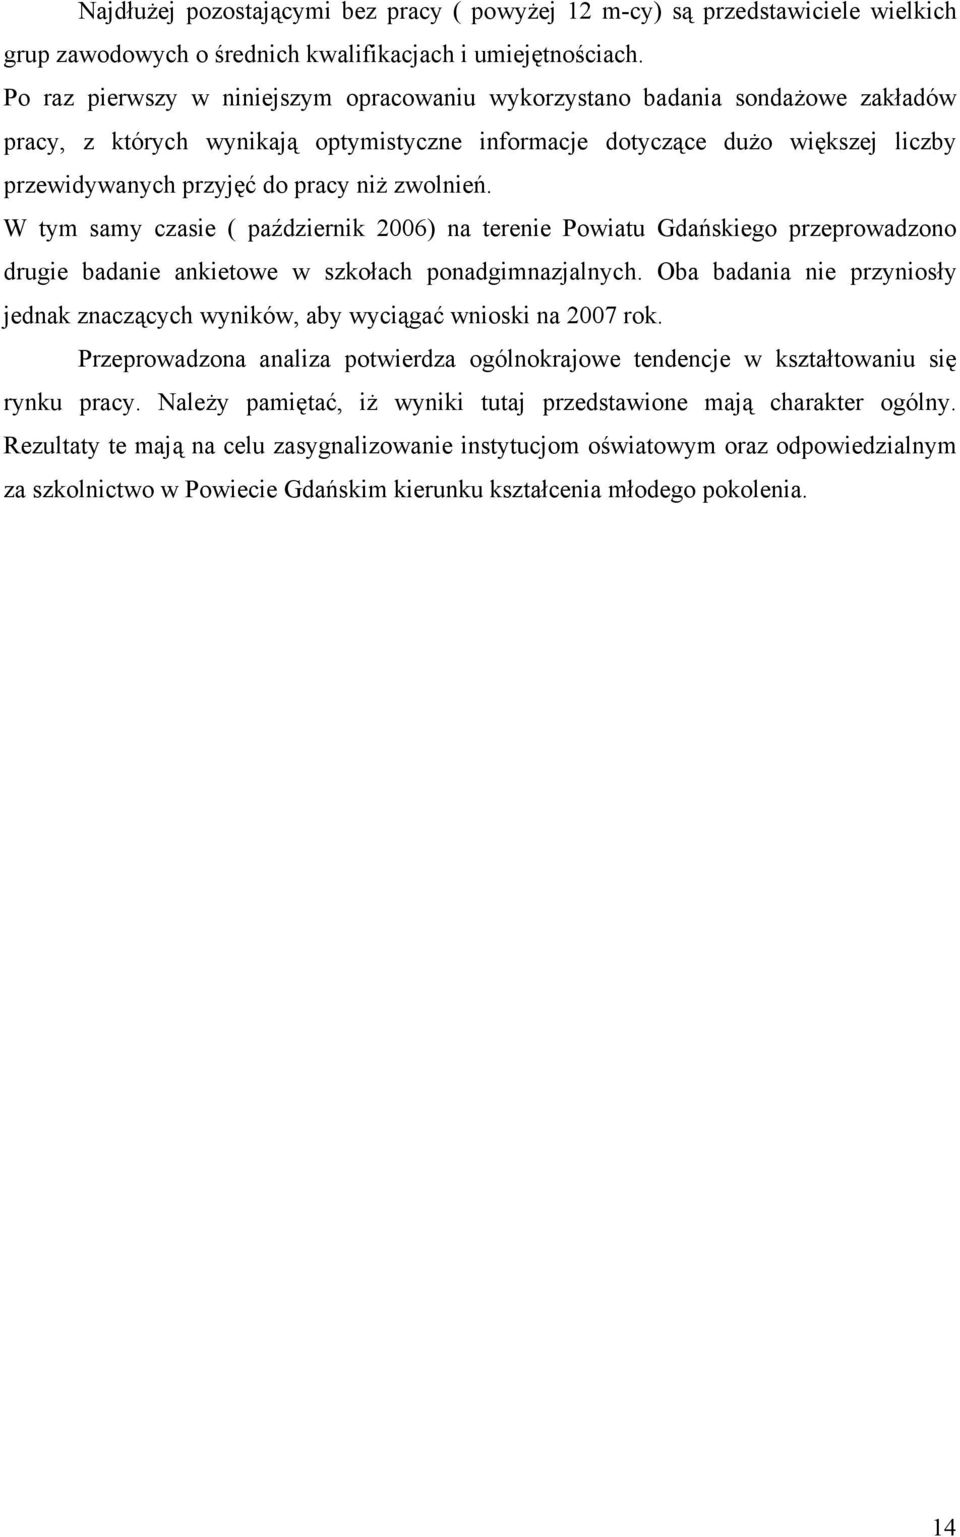 zwolnień. W tym samy czasie ( październi 2006) na terenie Powiatu Gdańsiego przeprowadzono drugie badanie anietowe w szołach ponadgimnazjalnych.